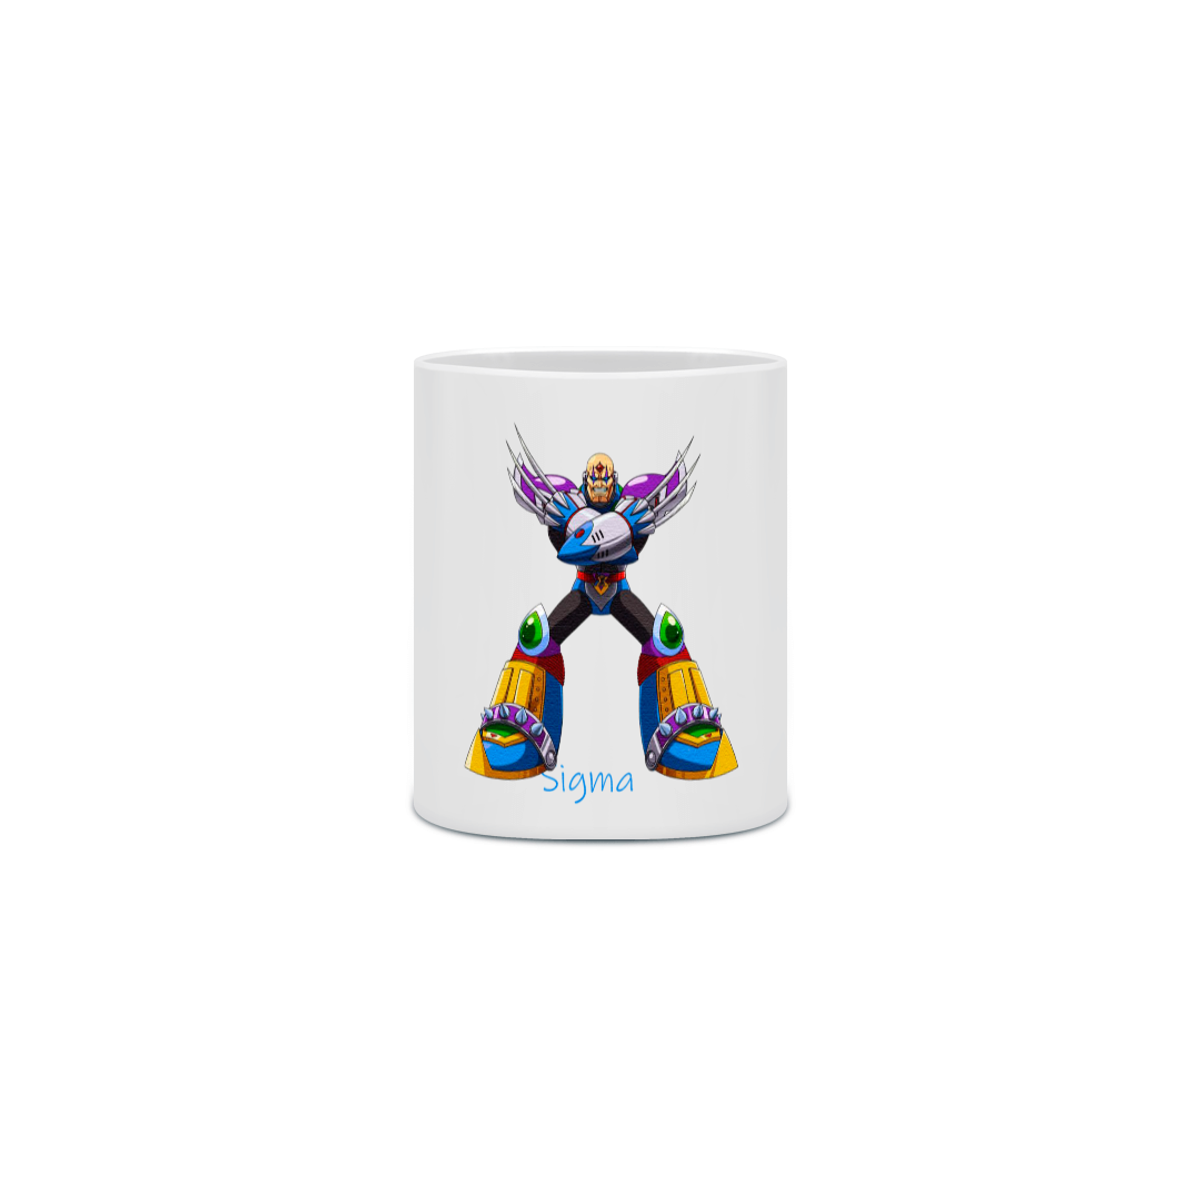 Nome do produto: Caneca Mega Man 13